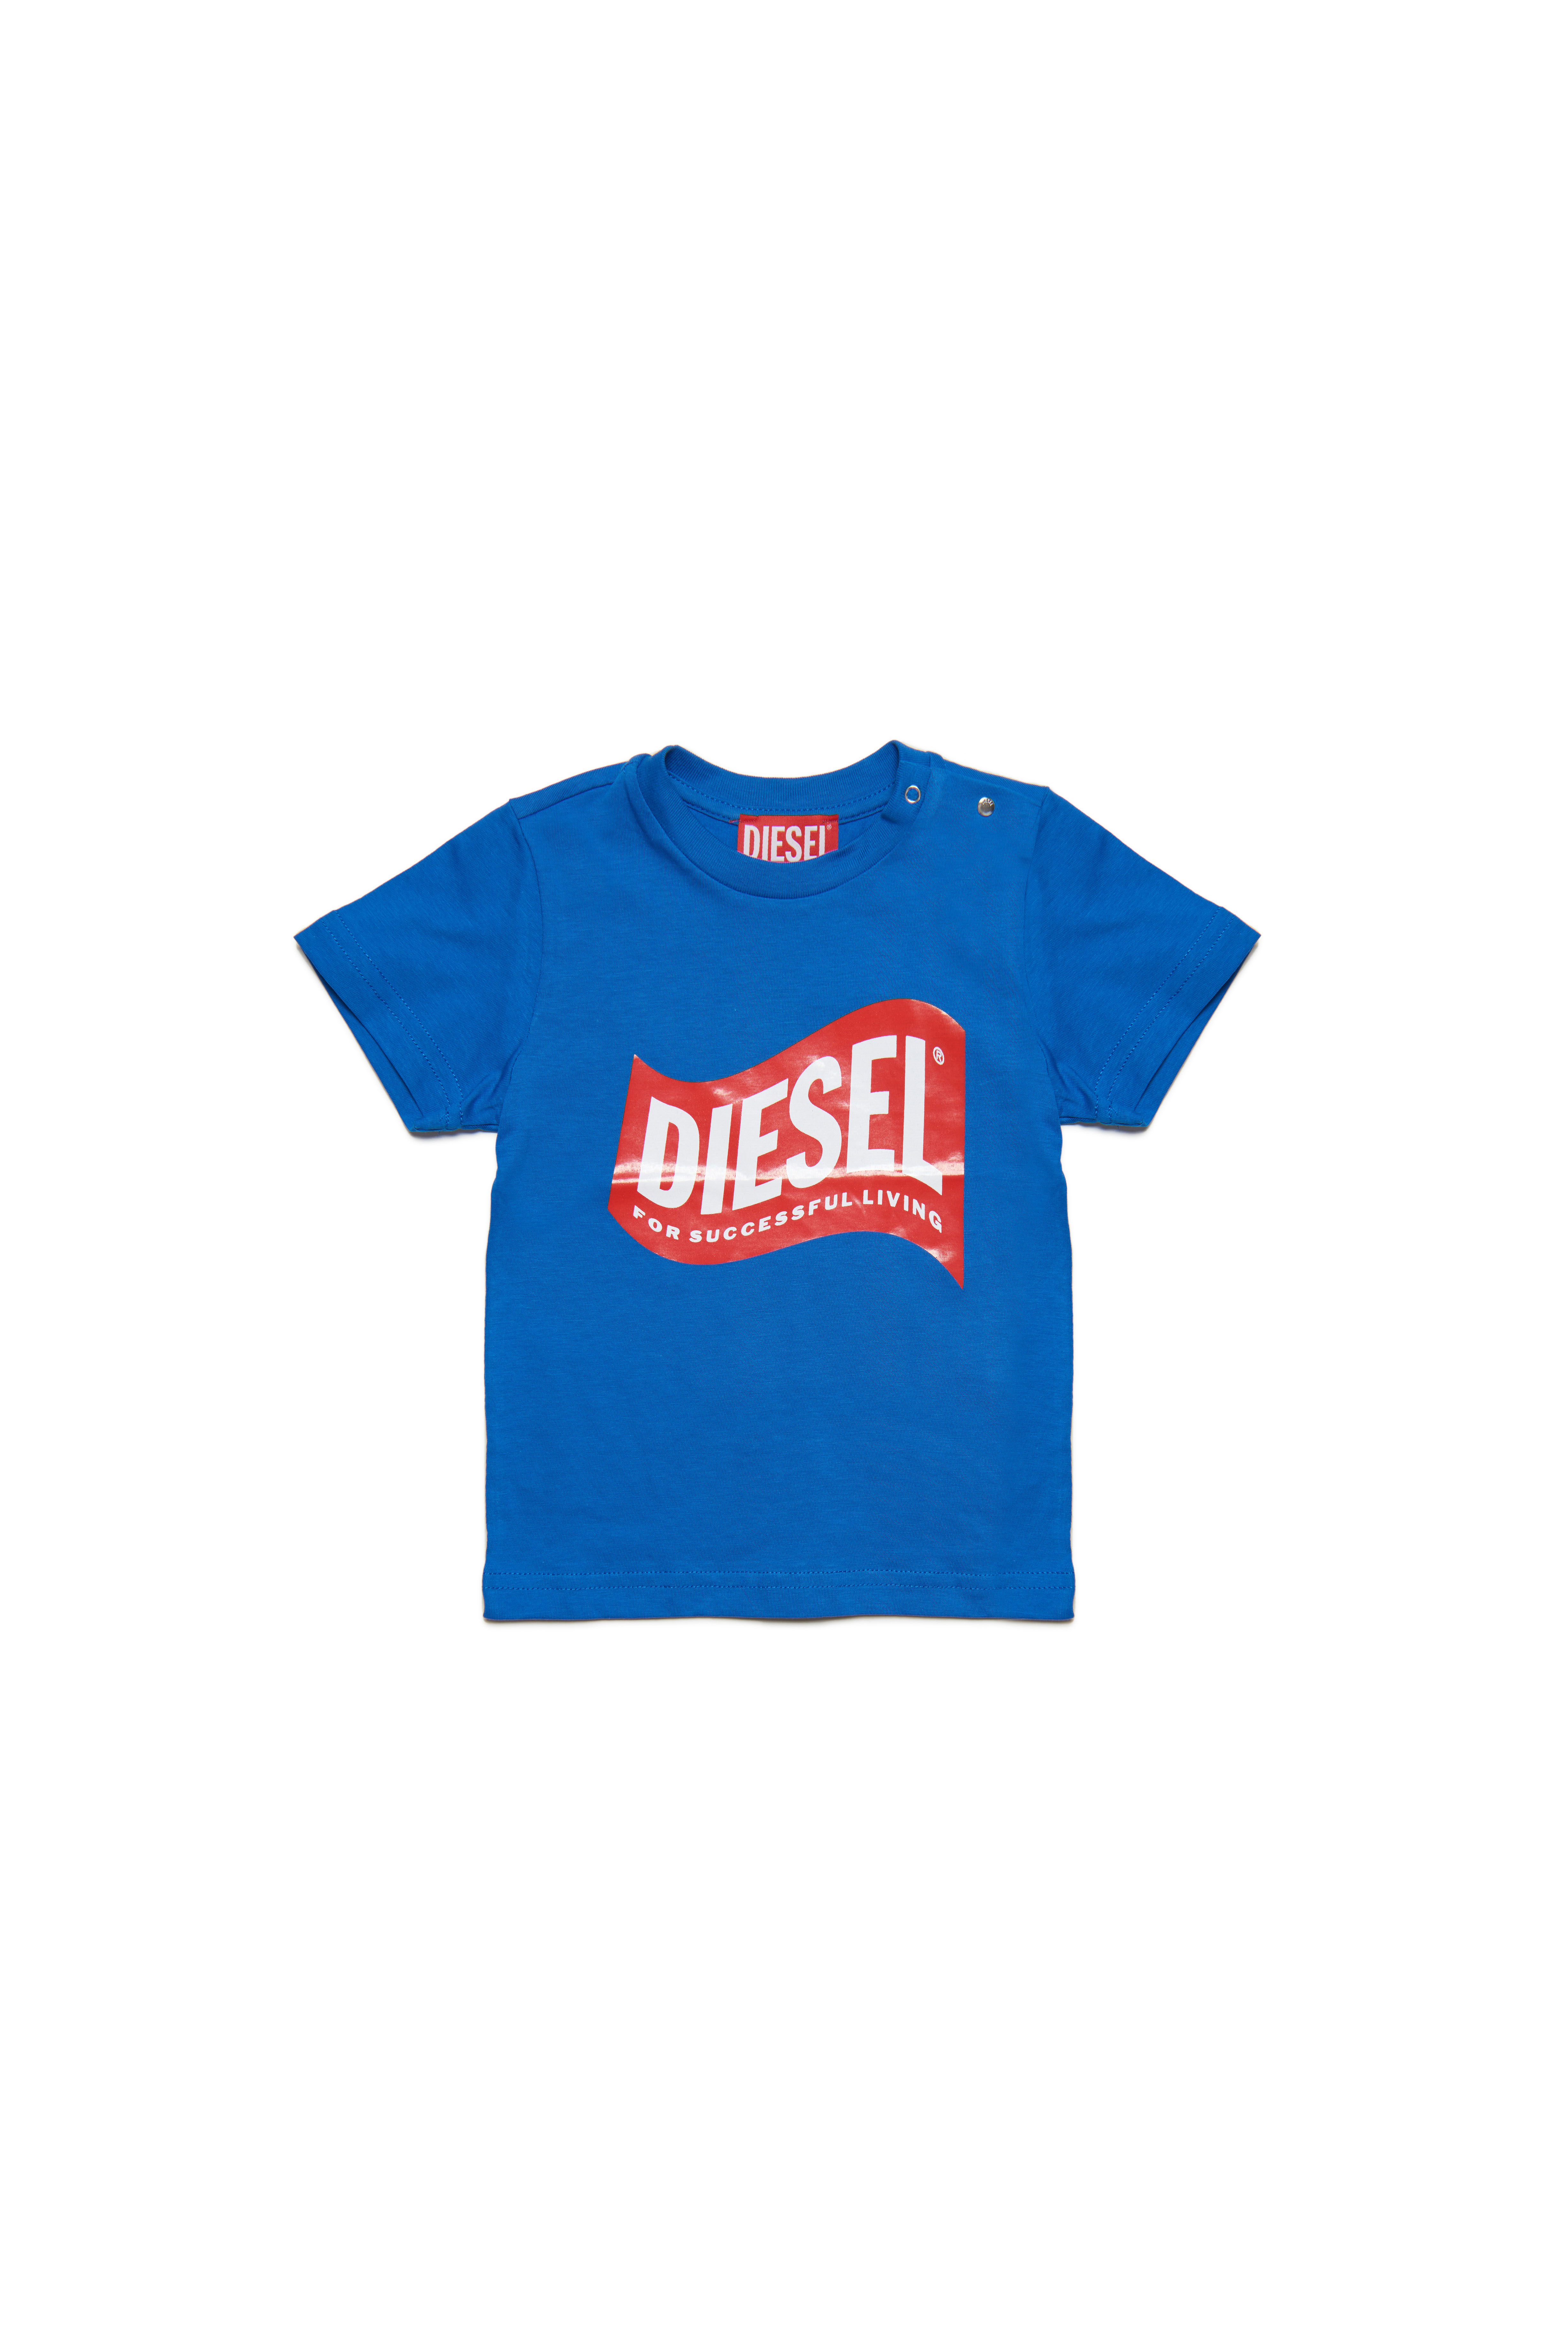 Diesel - TLINB, Bleu - Image 1